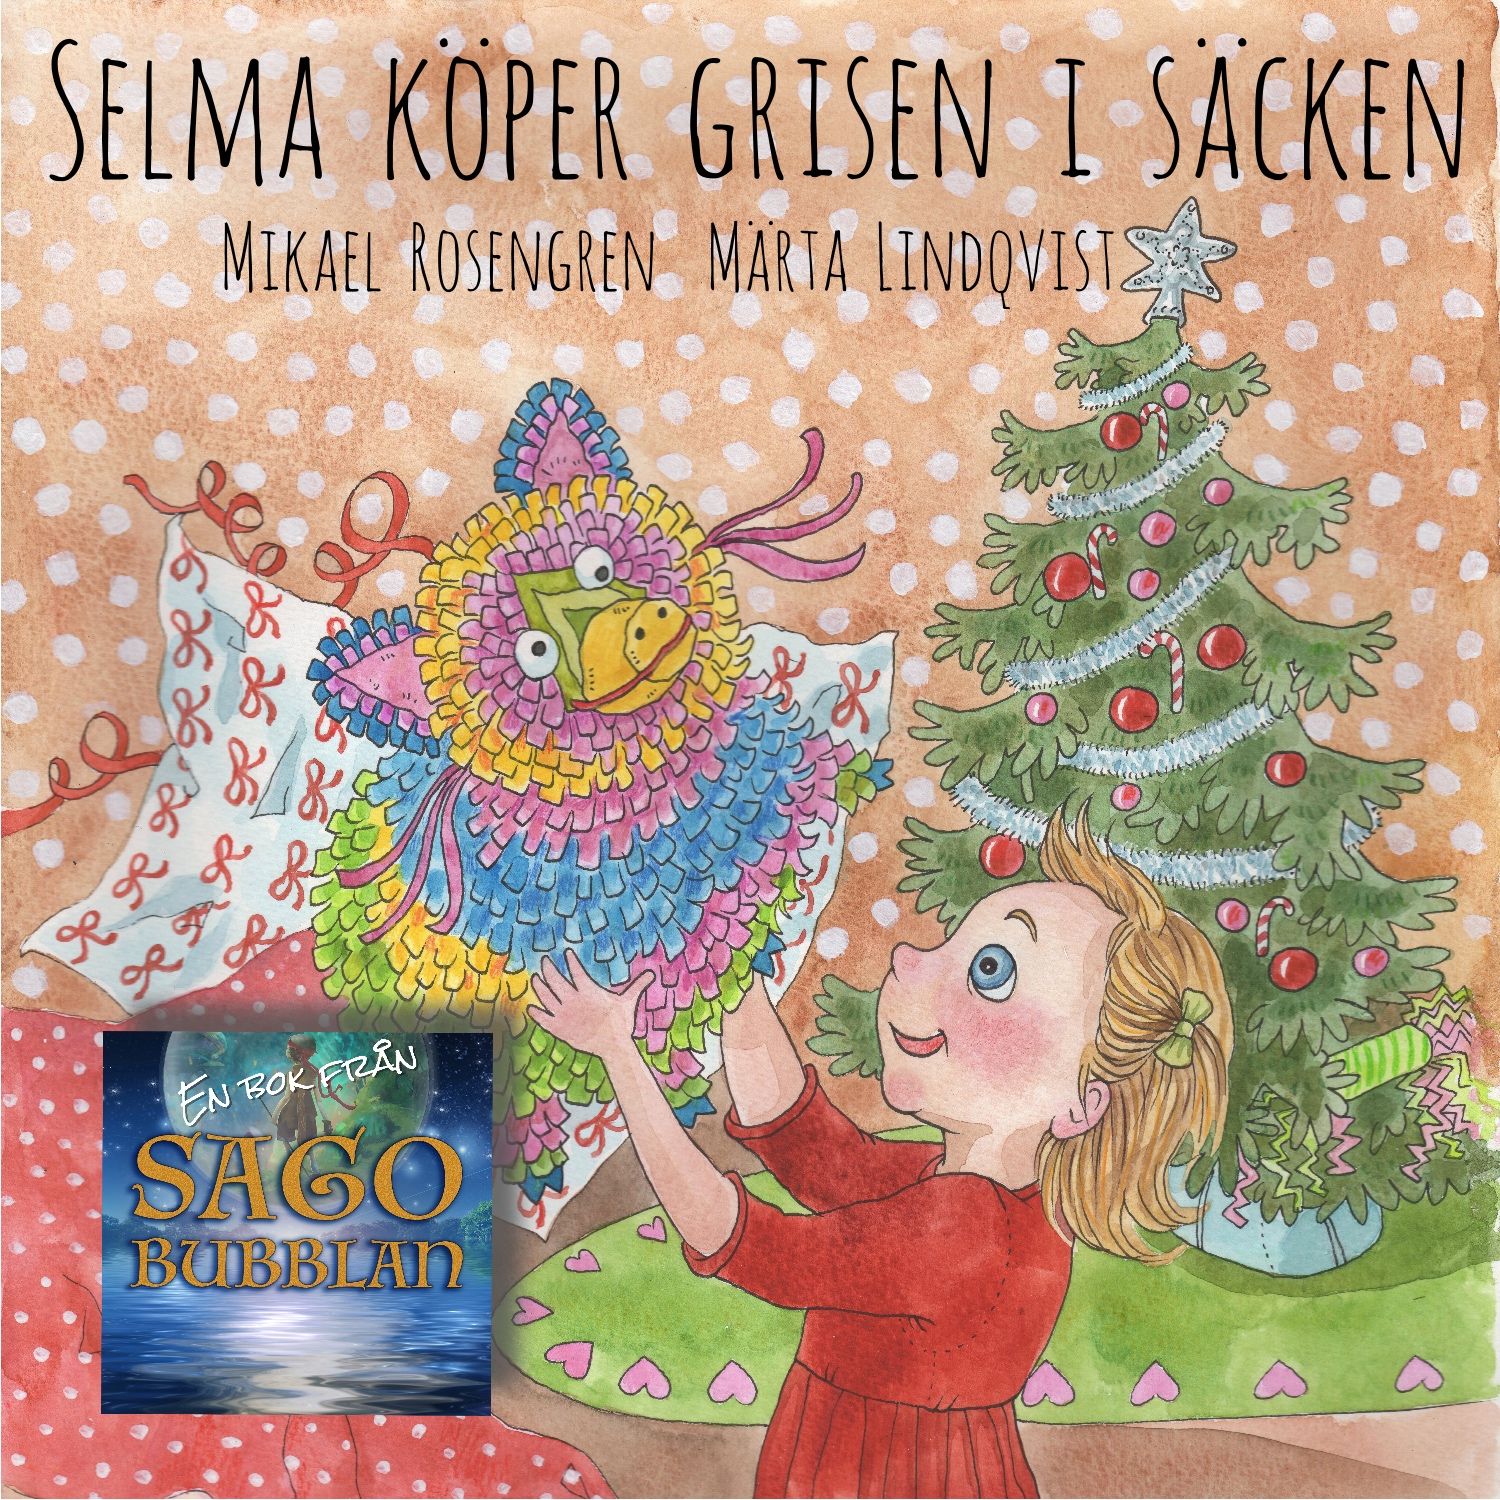 Selma köper grisen i säcken, ljudbok av Mikael Rosengren